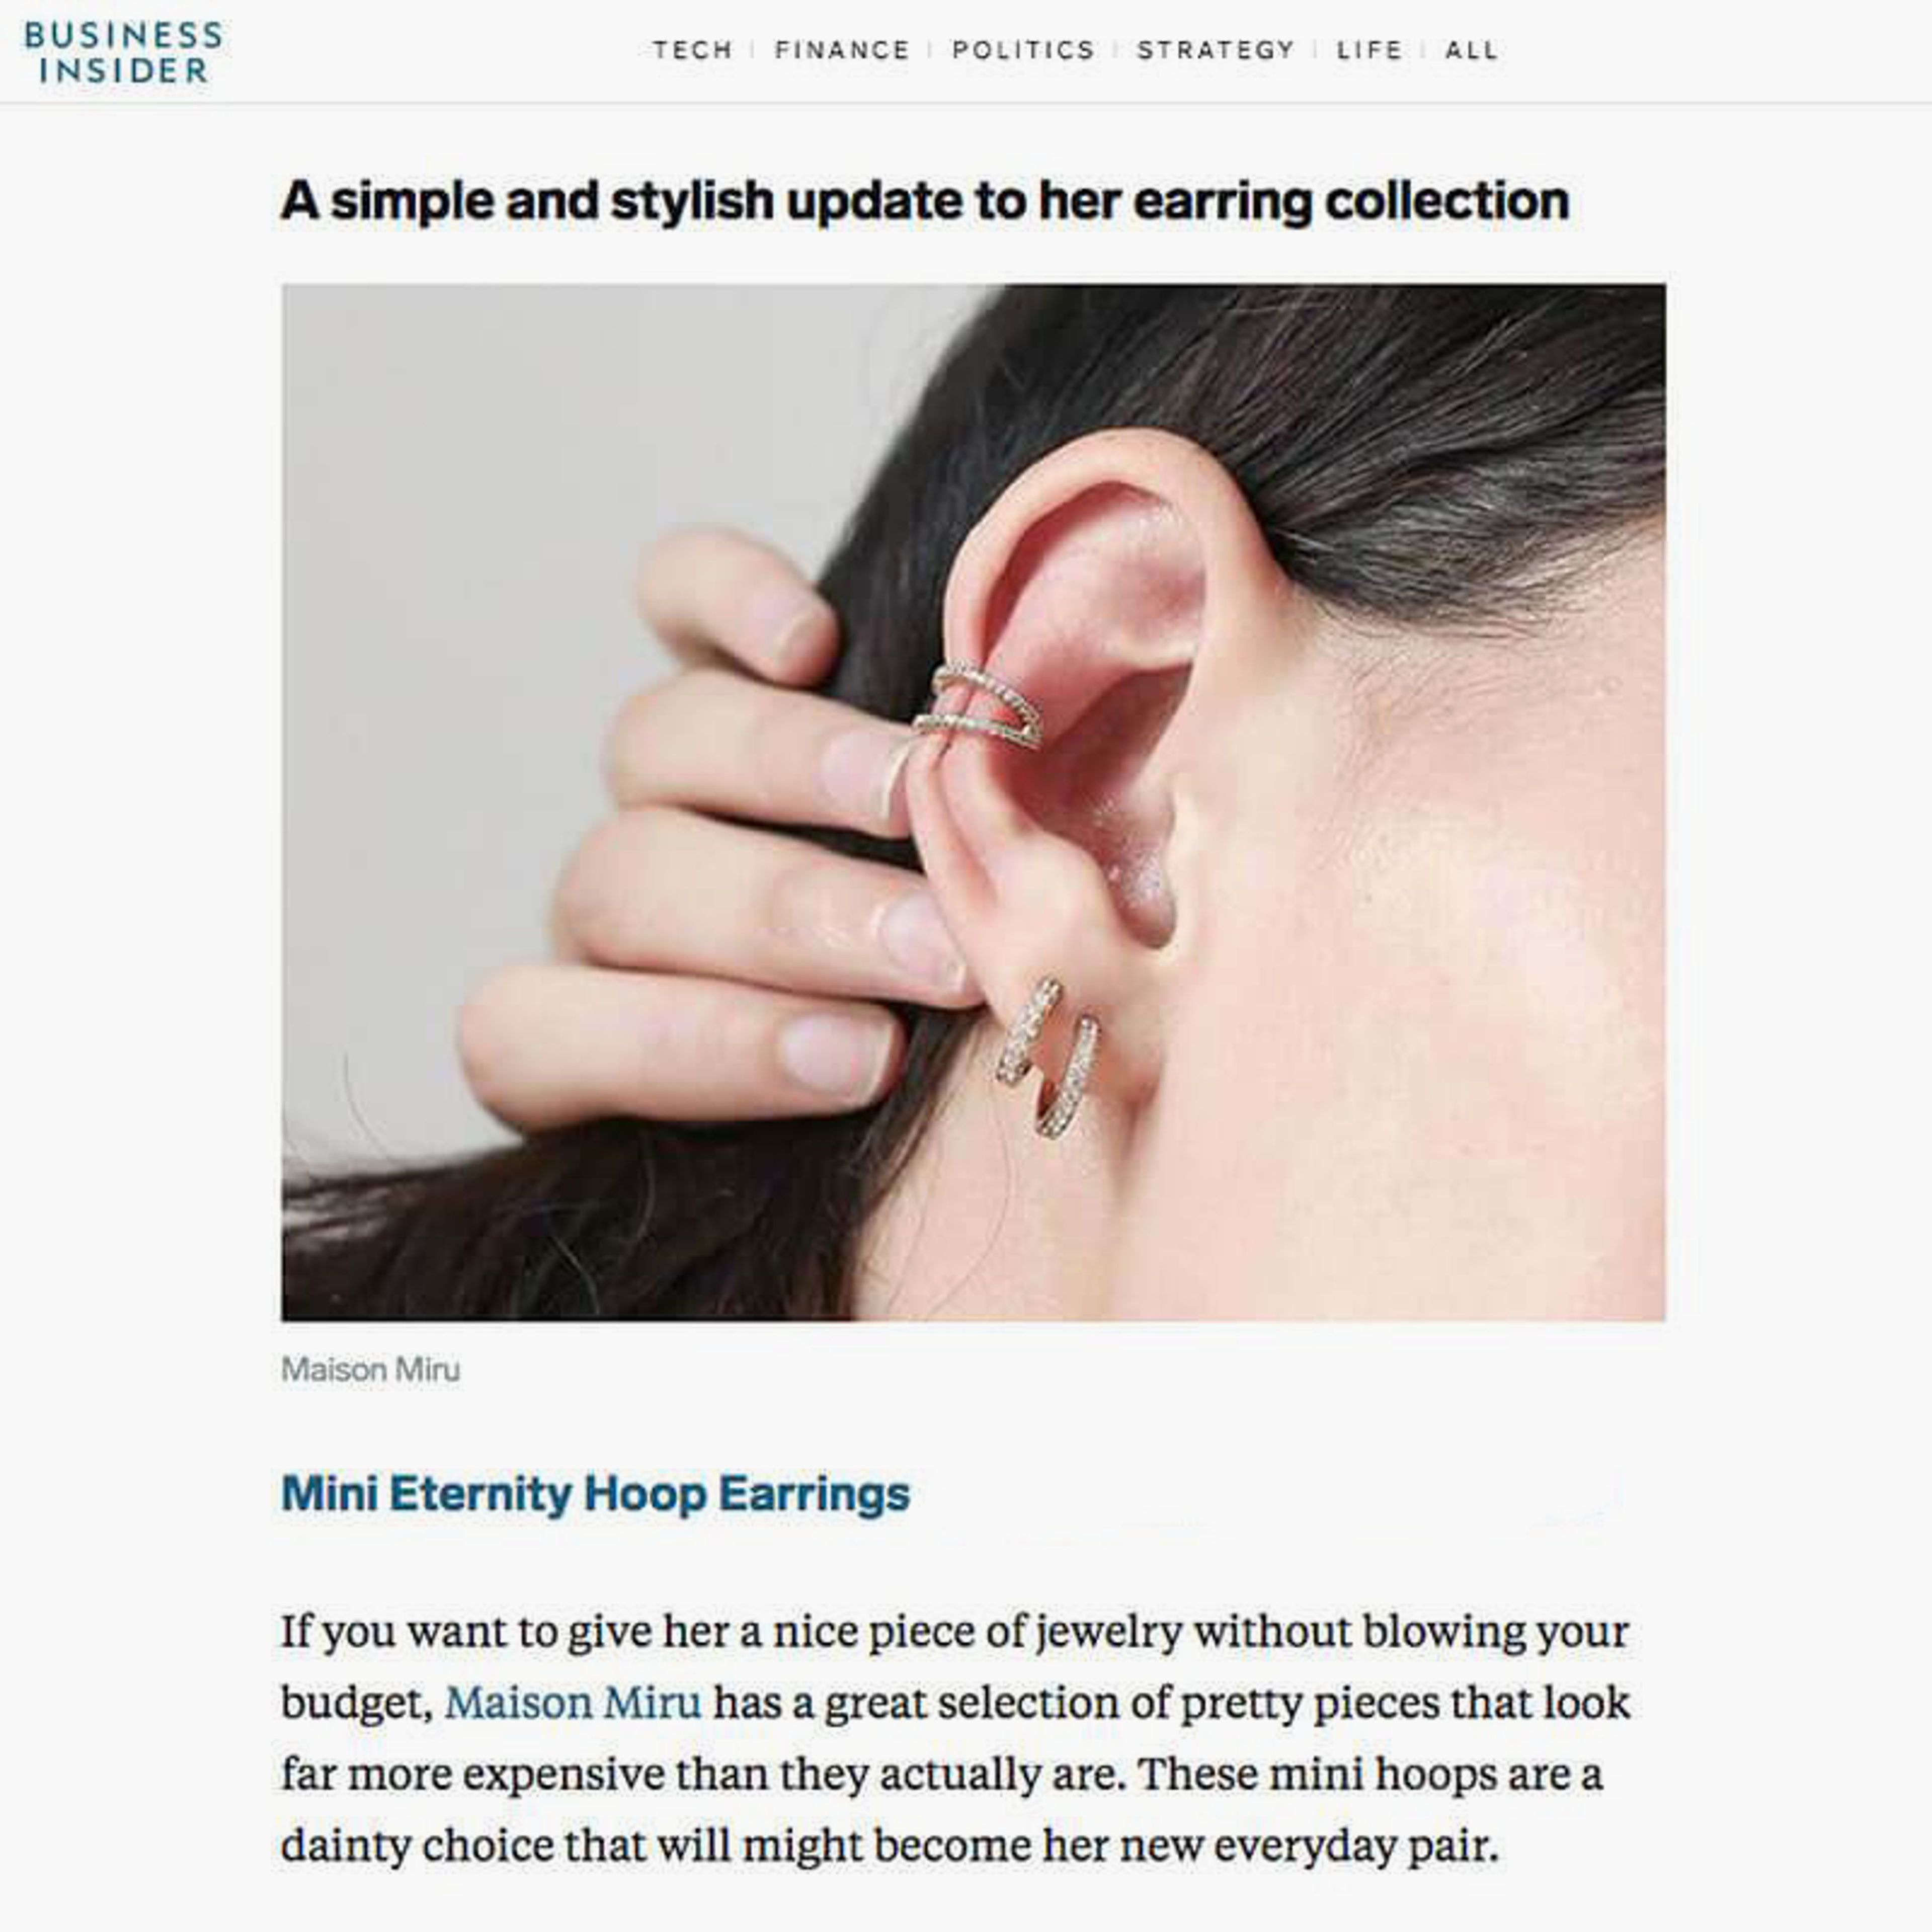 Mini Eternity Hoop Earrings